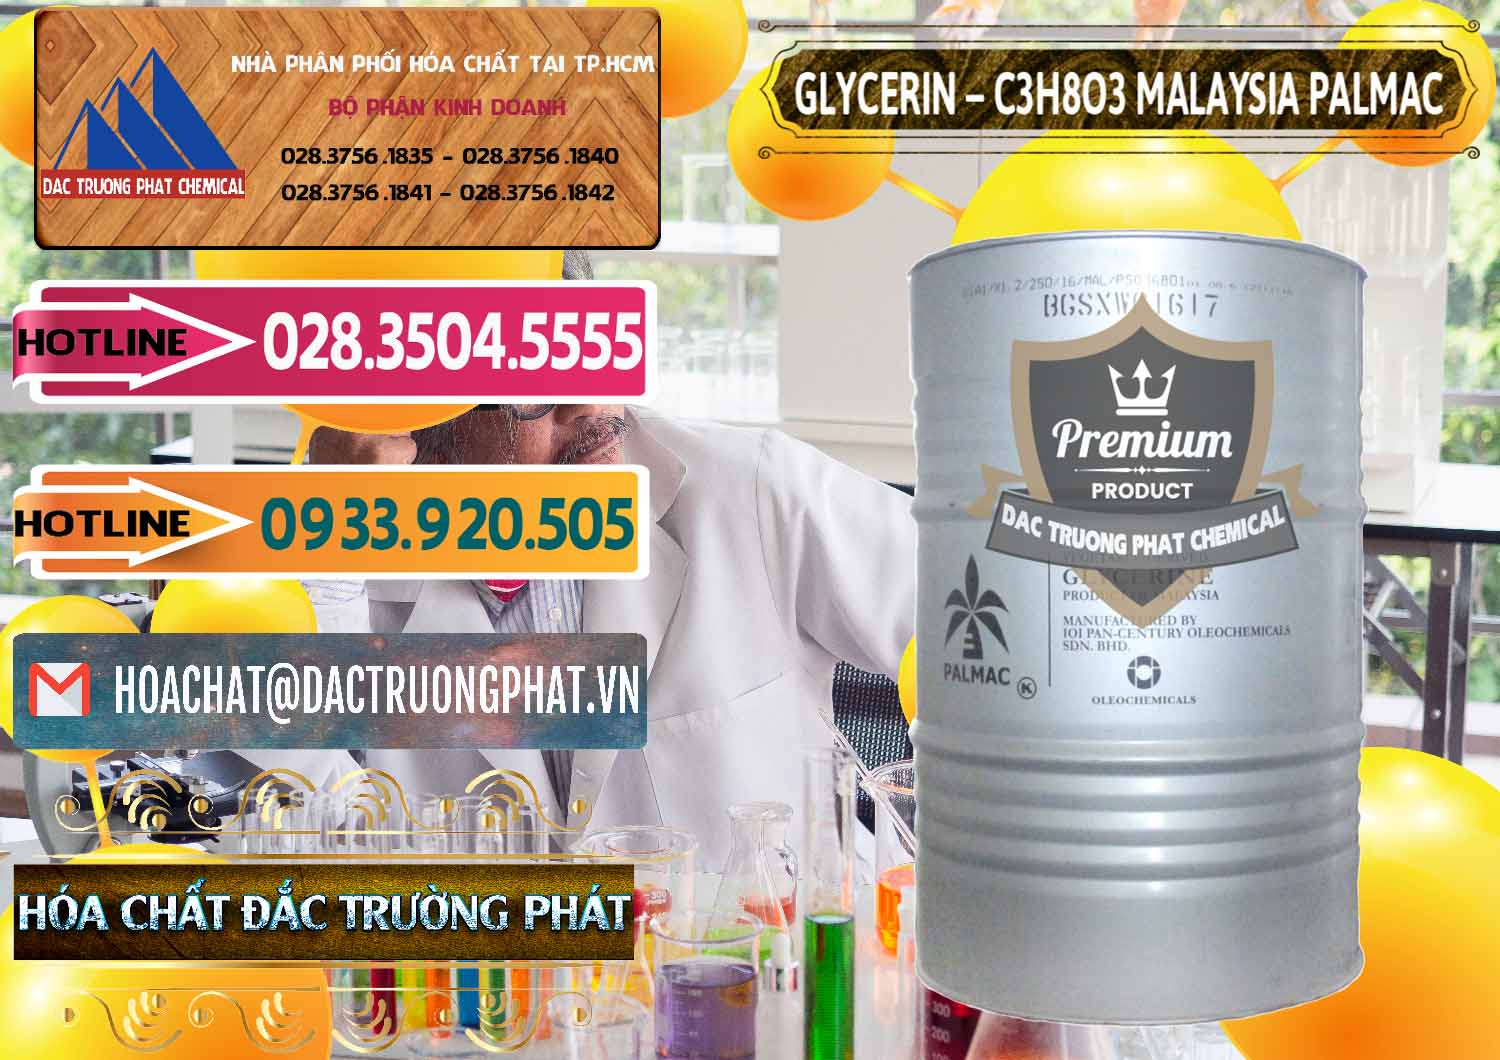 Cty chuyên bán - cung cấp Glycerin – C3H8O3 99.7% Malaysia Palmac - 0067 - Nhà cung cấp và kinh doanh hóa chất tại TP.HCM - dactruongphat.vn